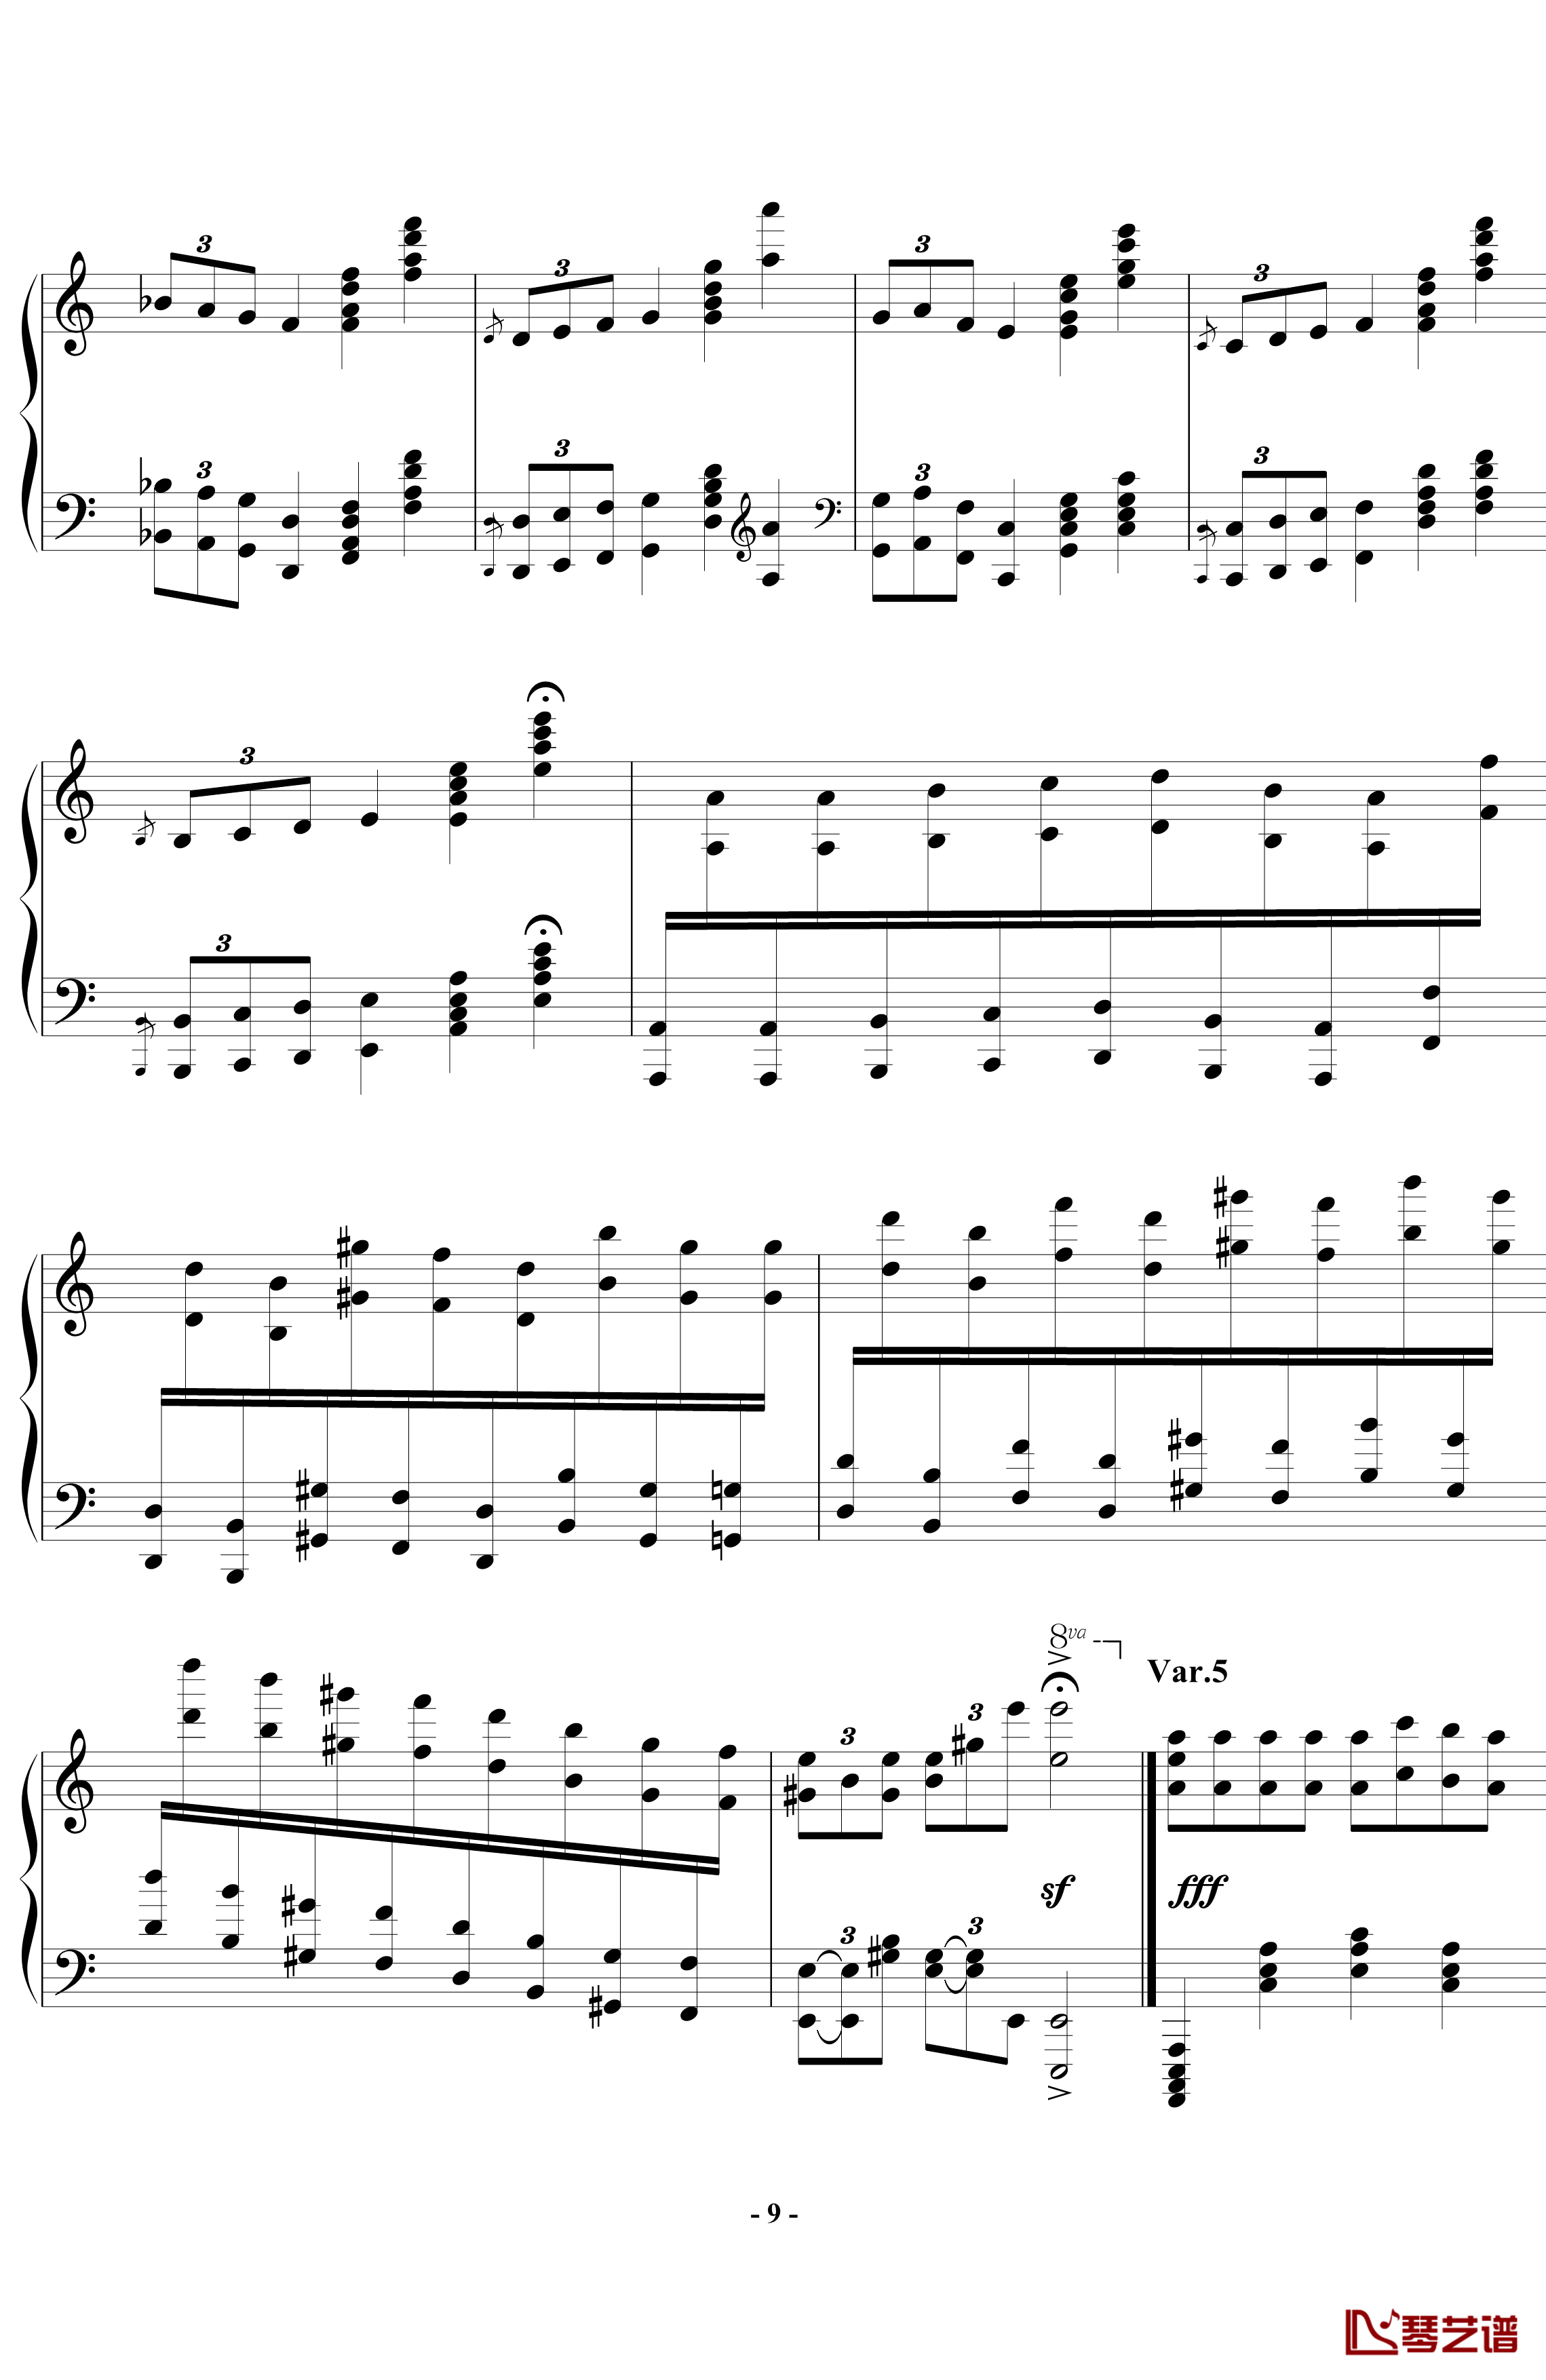 帕格尼尼飞絮曲钢琴谱-标准版-马克西姆-Maksim·Mrvica9